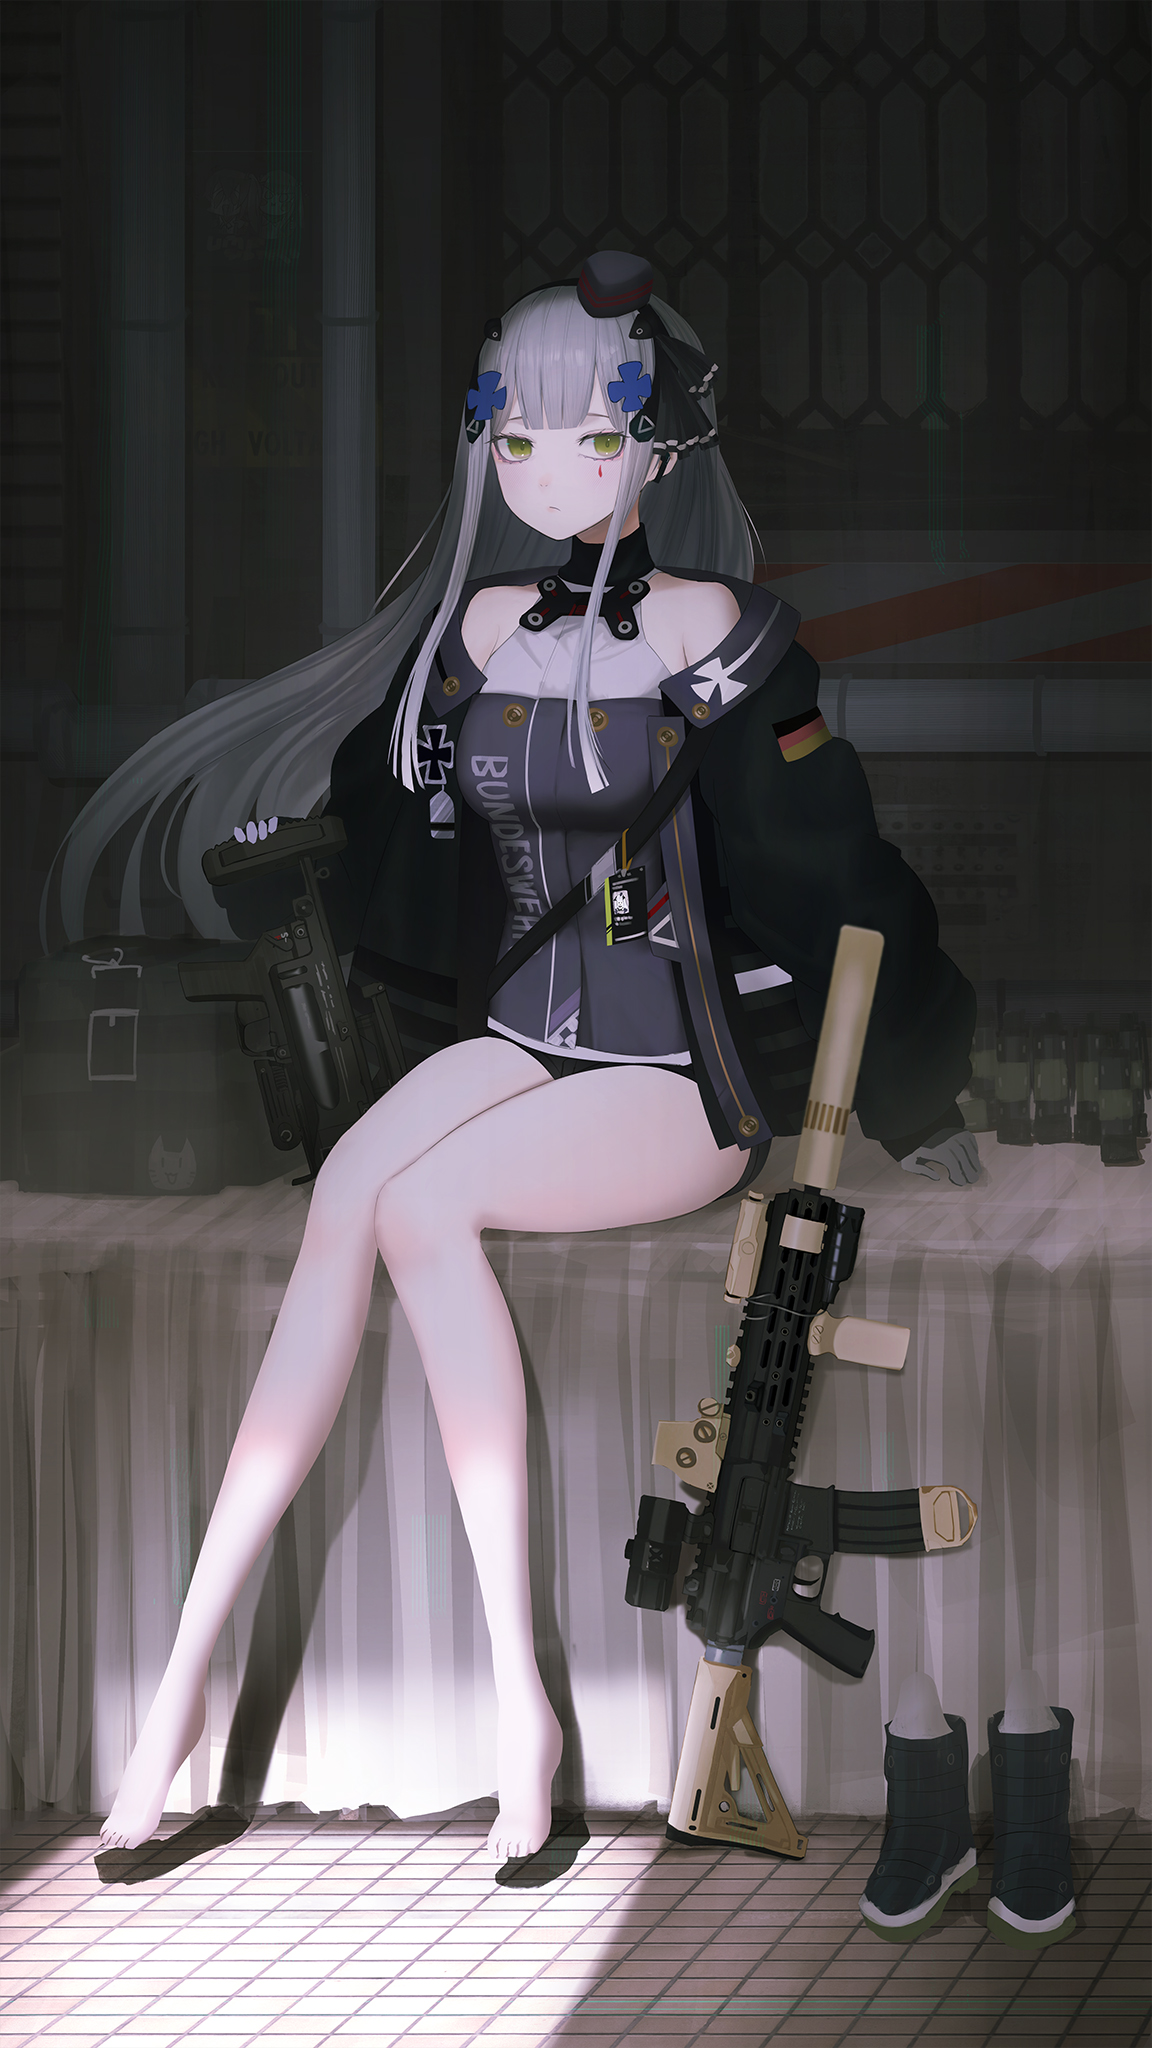 HK416 (Girls Frontline), FTE, girls with guns, Girls Frontline, anime  girls, gun | 2480x3888 Wallpaper - wallhaven.cc